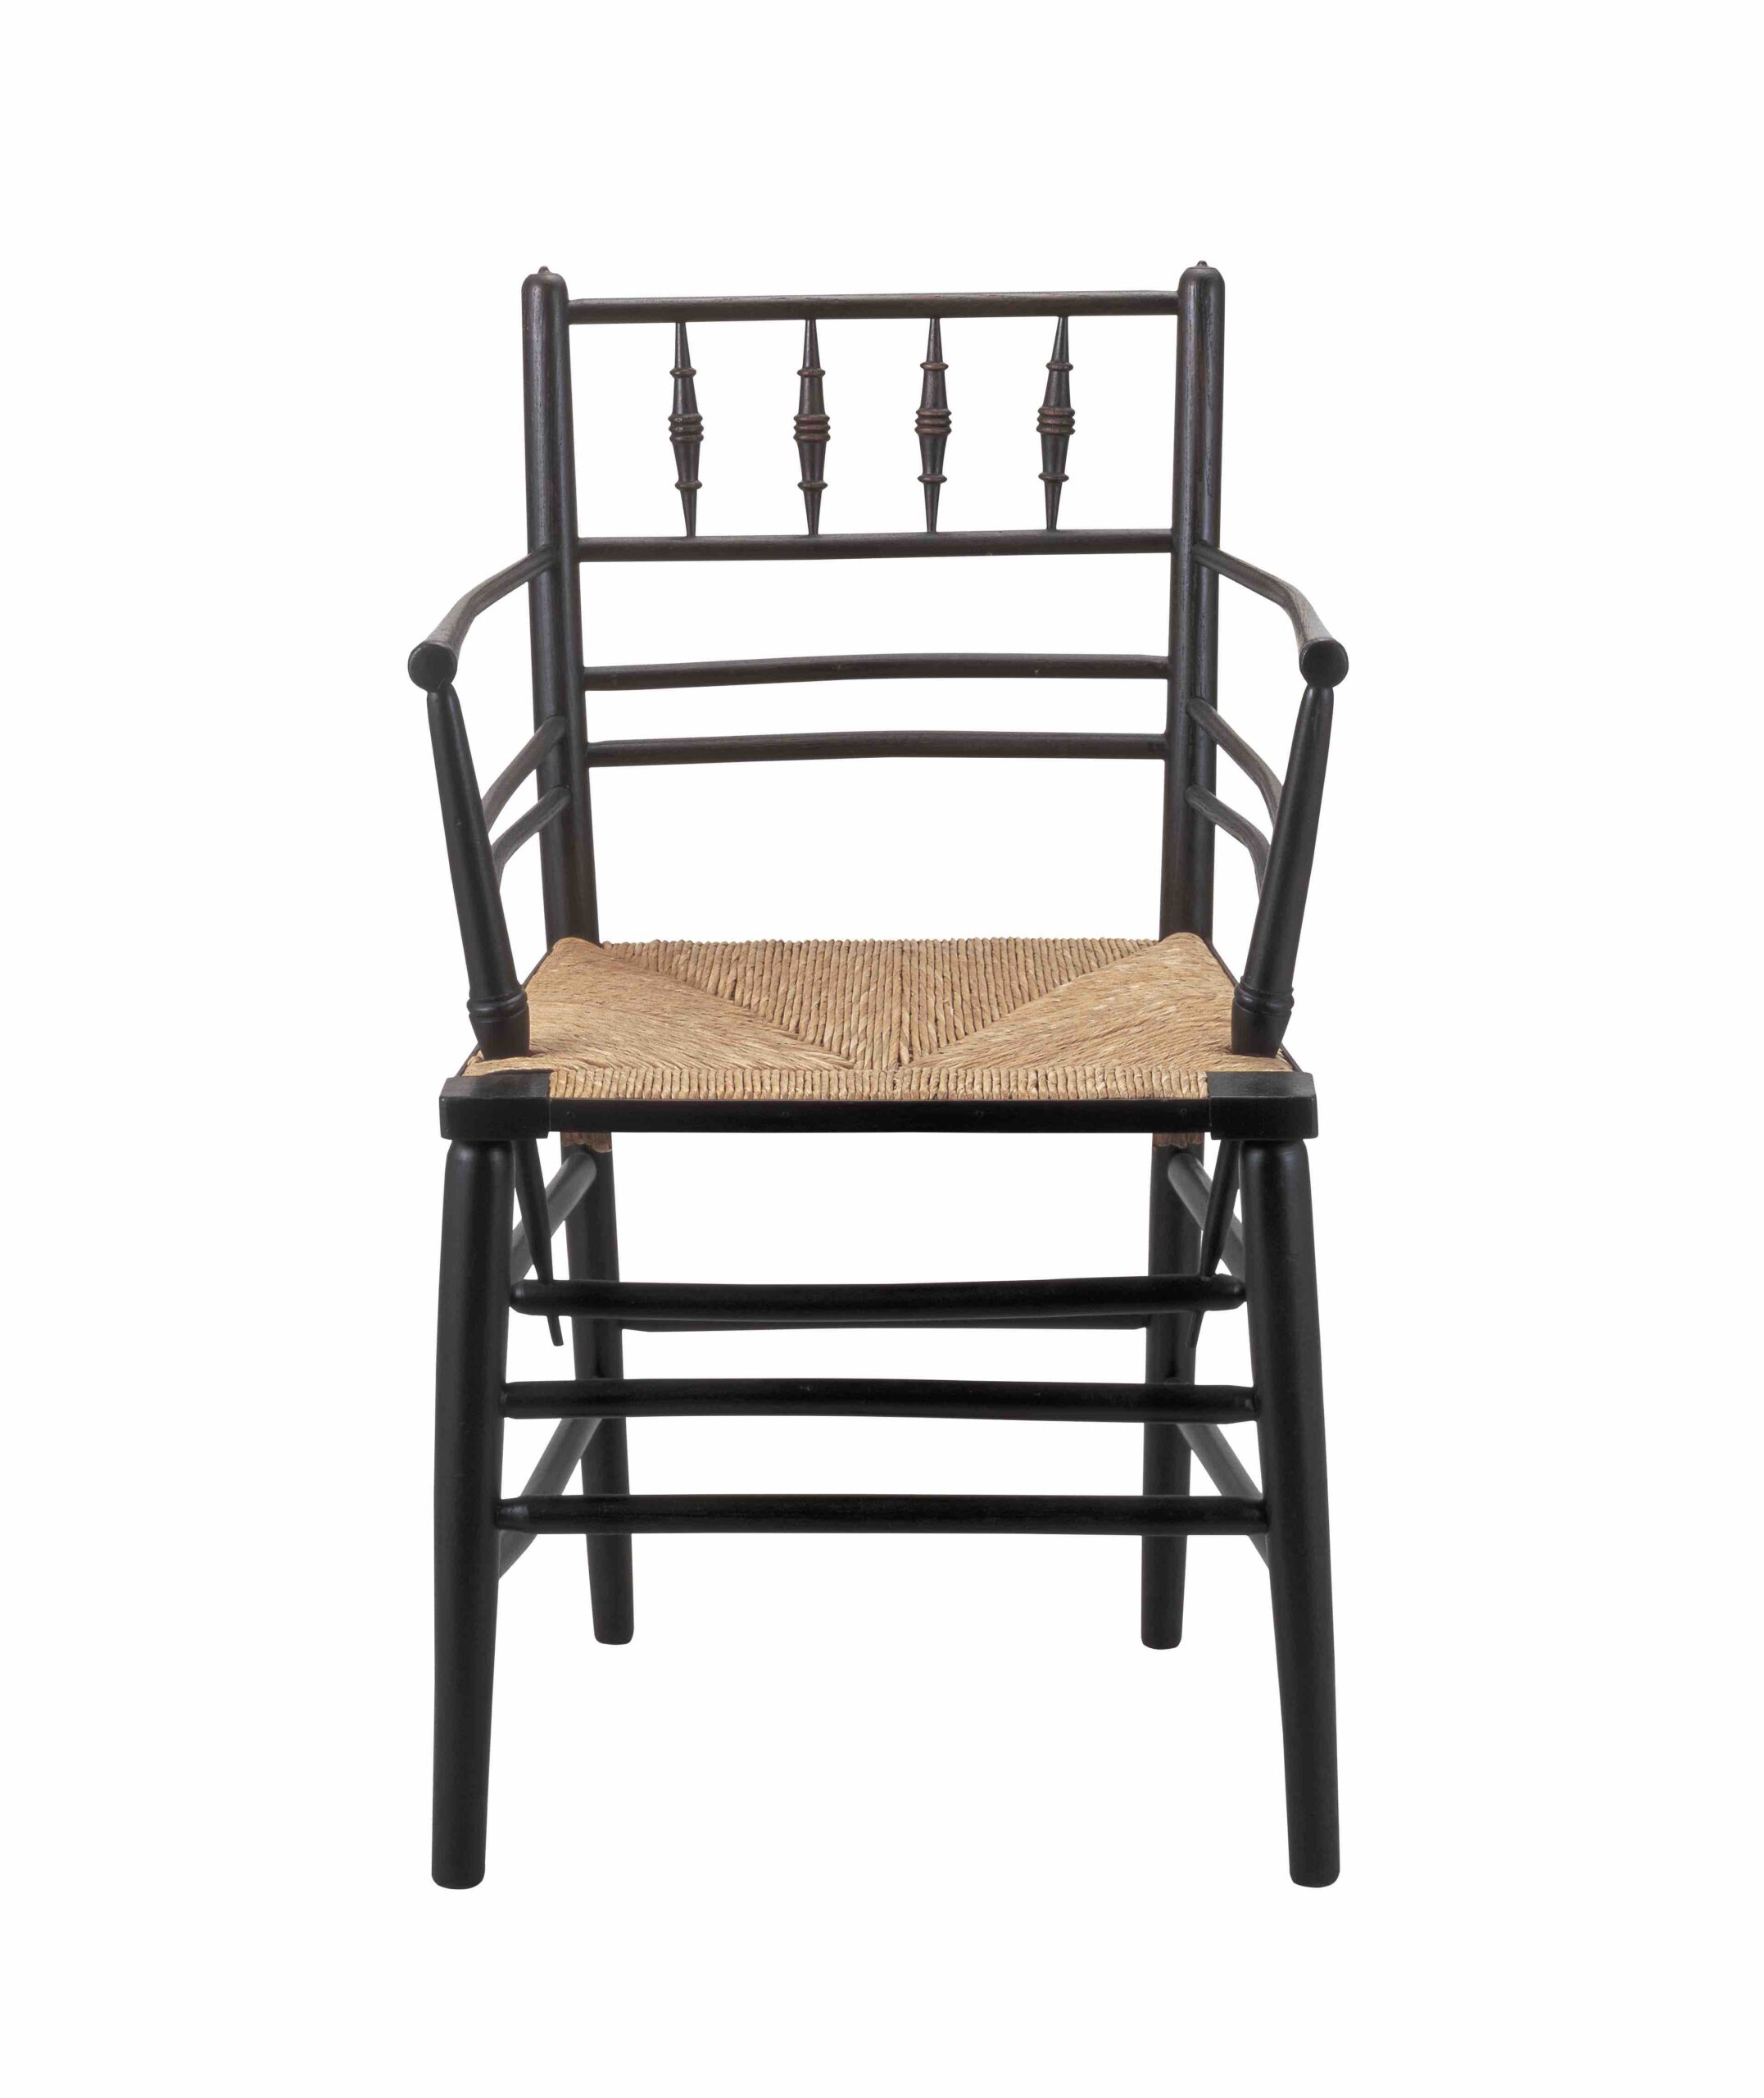 おそらくフィリップ・ウェッブ<br />
《サセックス・シリーズの肘掛け椅子》<br />
1860年頃　<br />
モリス・マーシャル・フォークナー商会<br />
